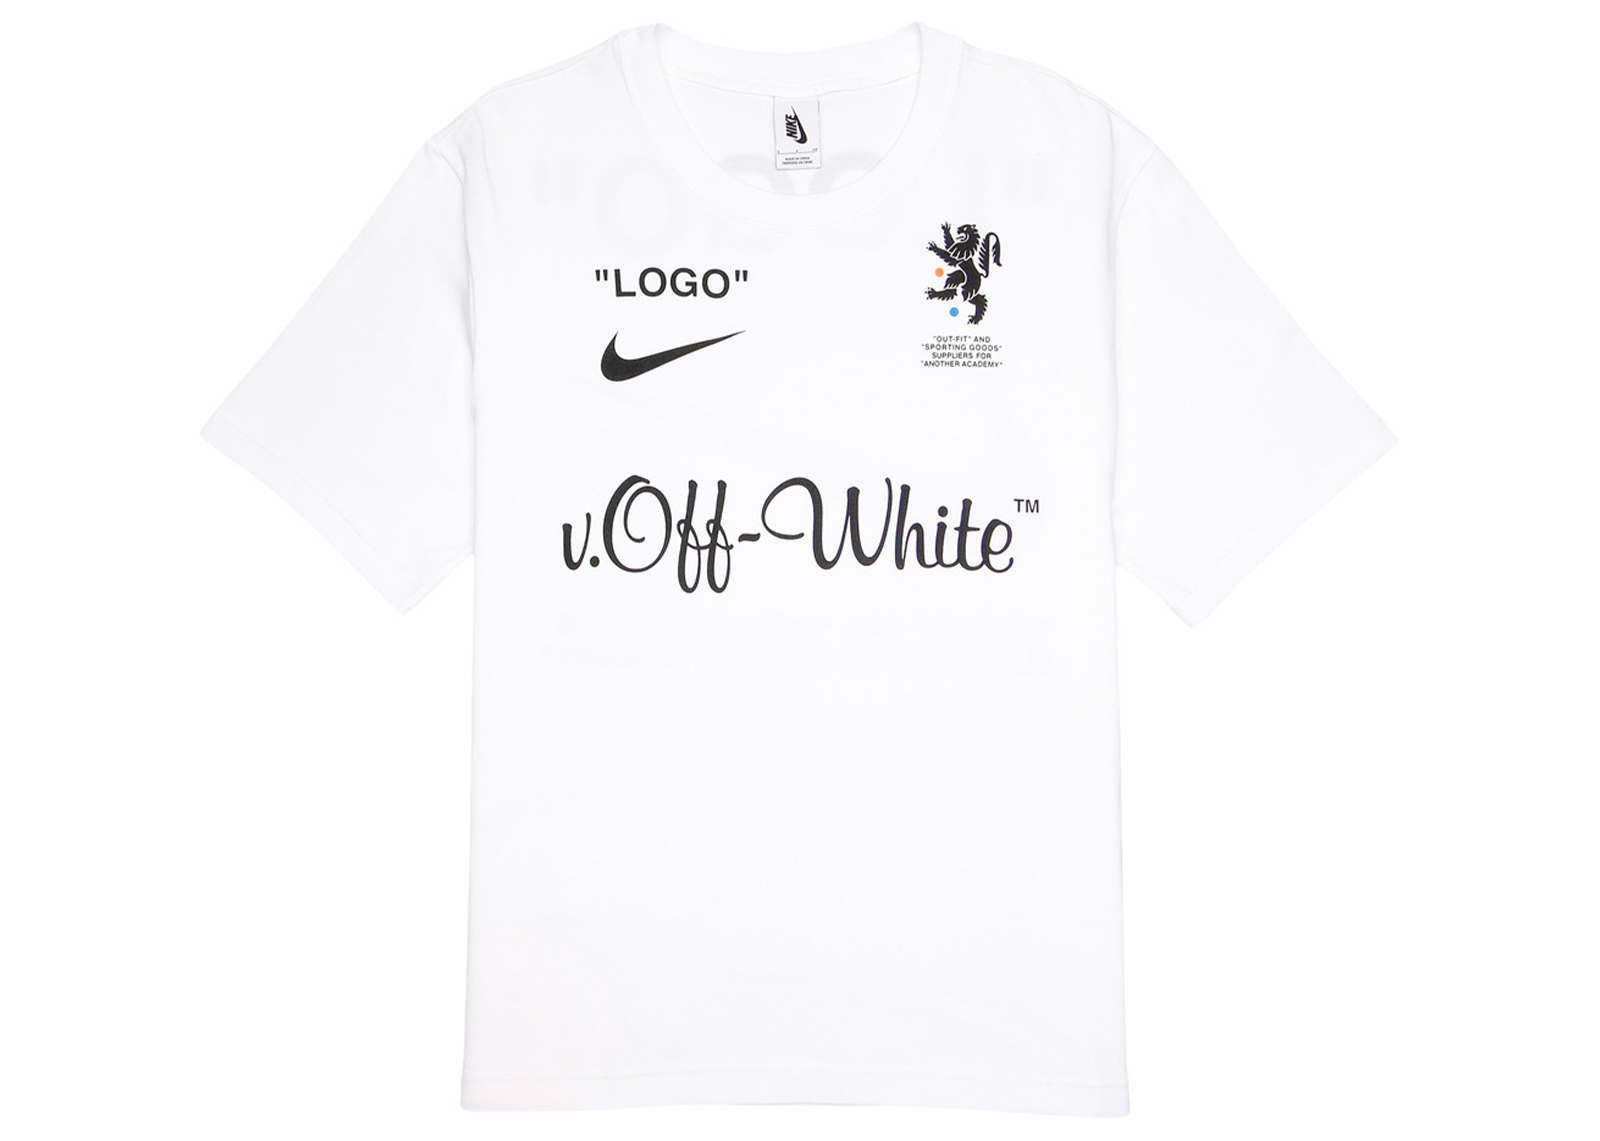 《新品》NIKE Off-White ブラック Tシャツ NIKELAB